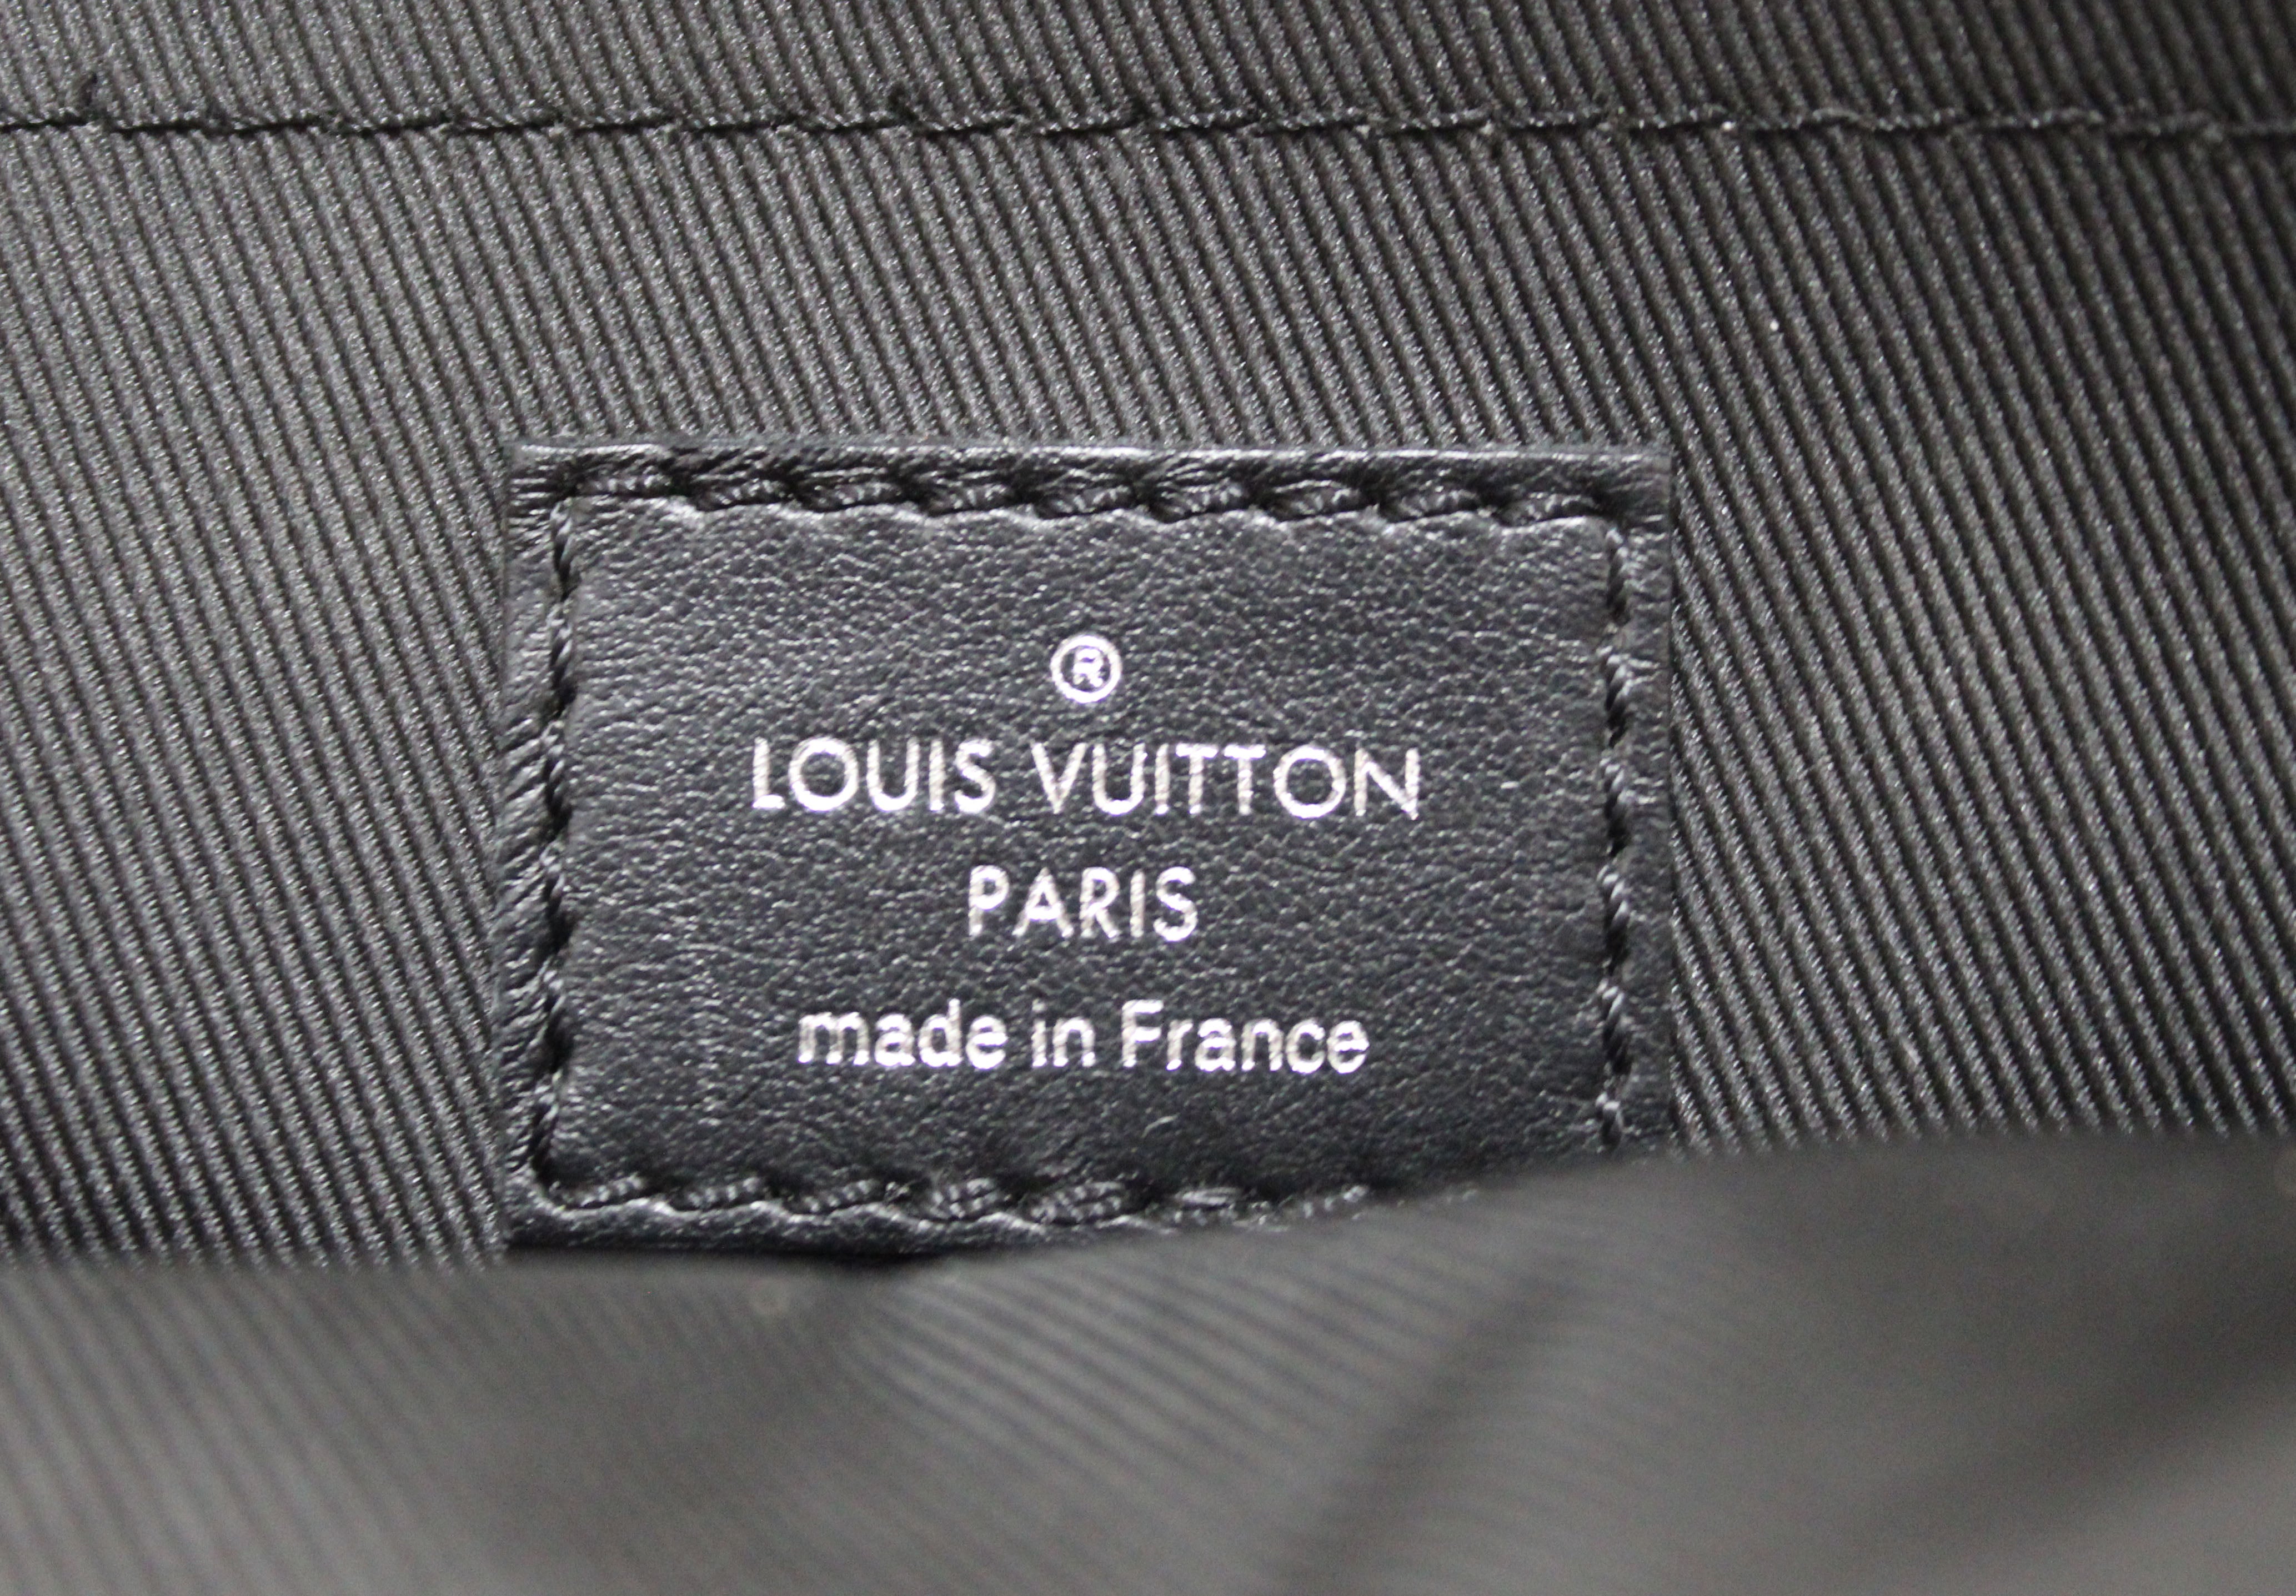 Authentic Louis Vuitton Damier Graphite 3D Amazone Sling Bag Black